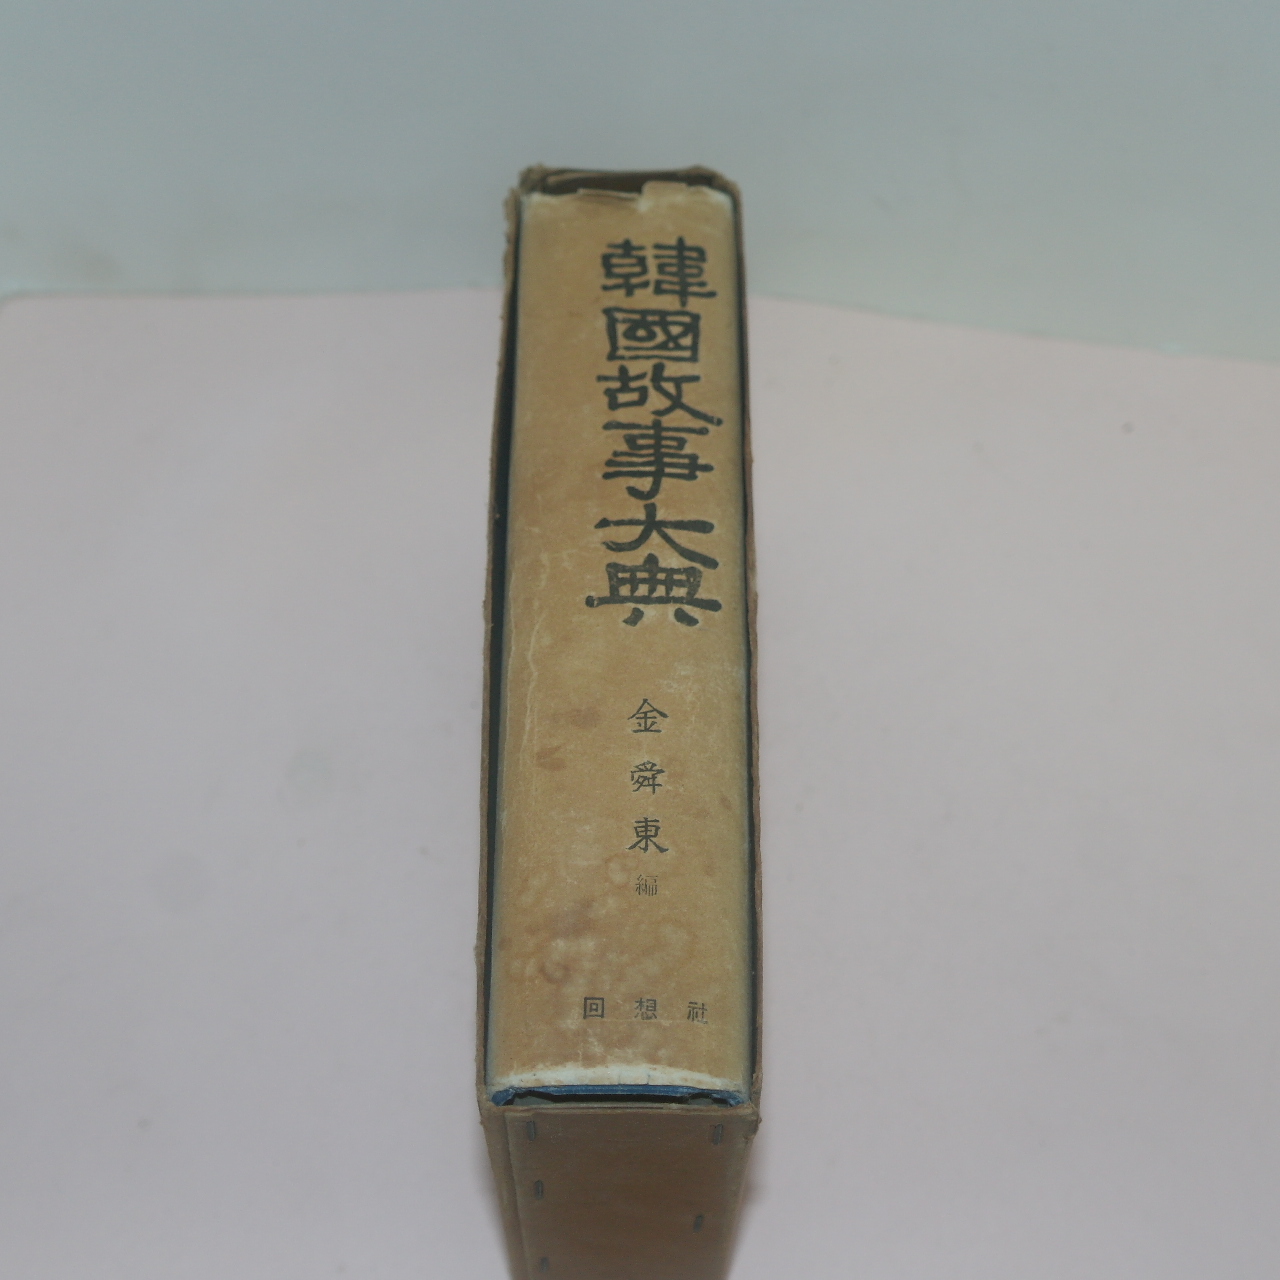 1969년 김순동(金舜東)편 한국고사대전(韓國故事大典) 1책완질